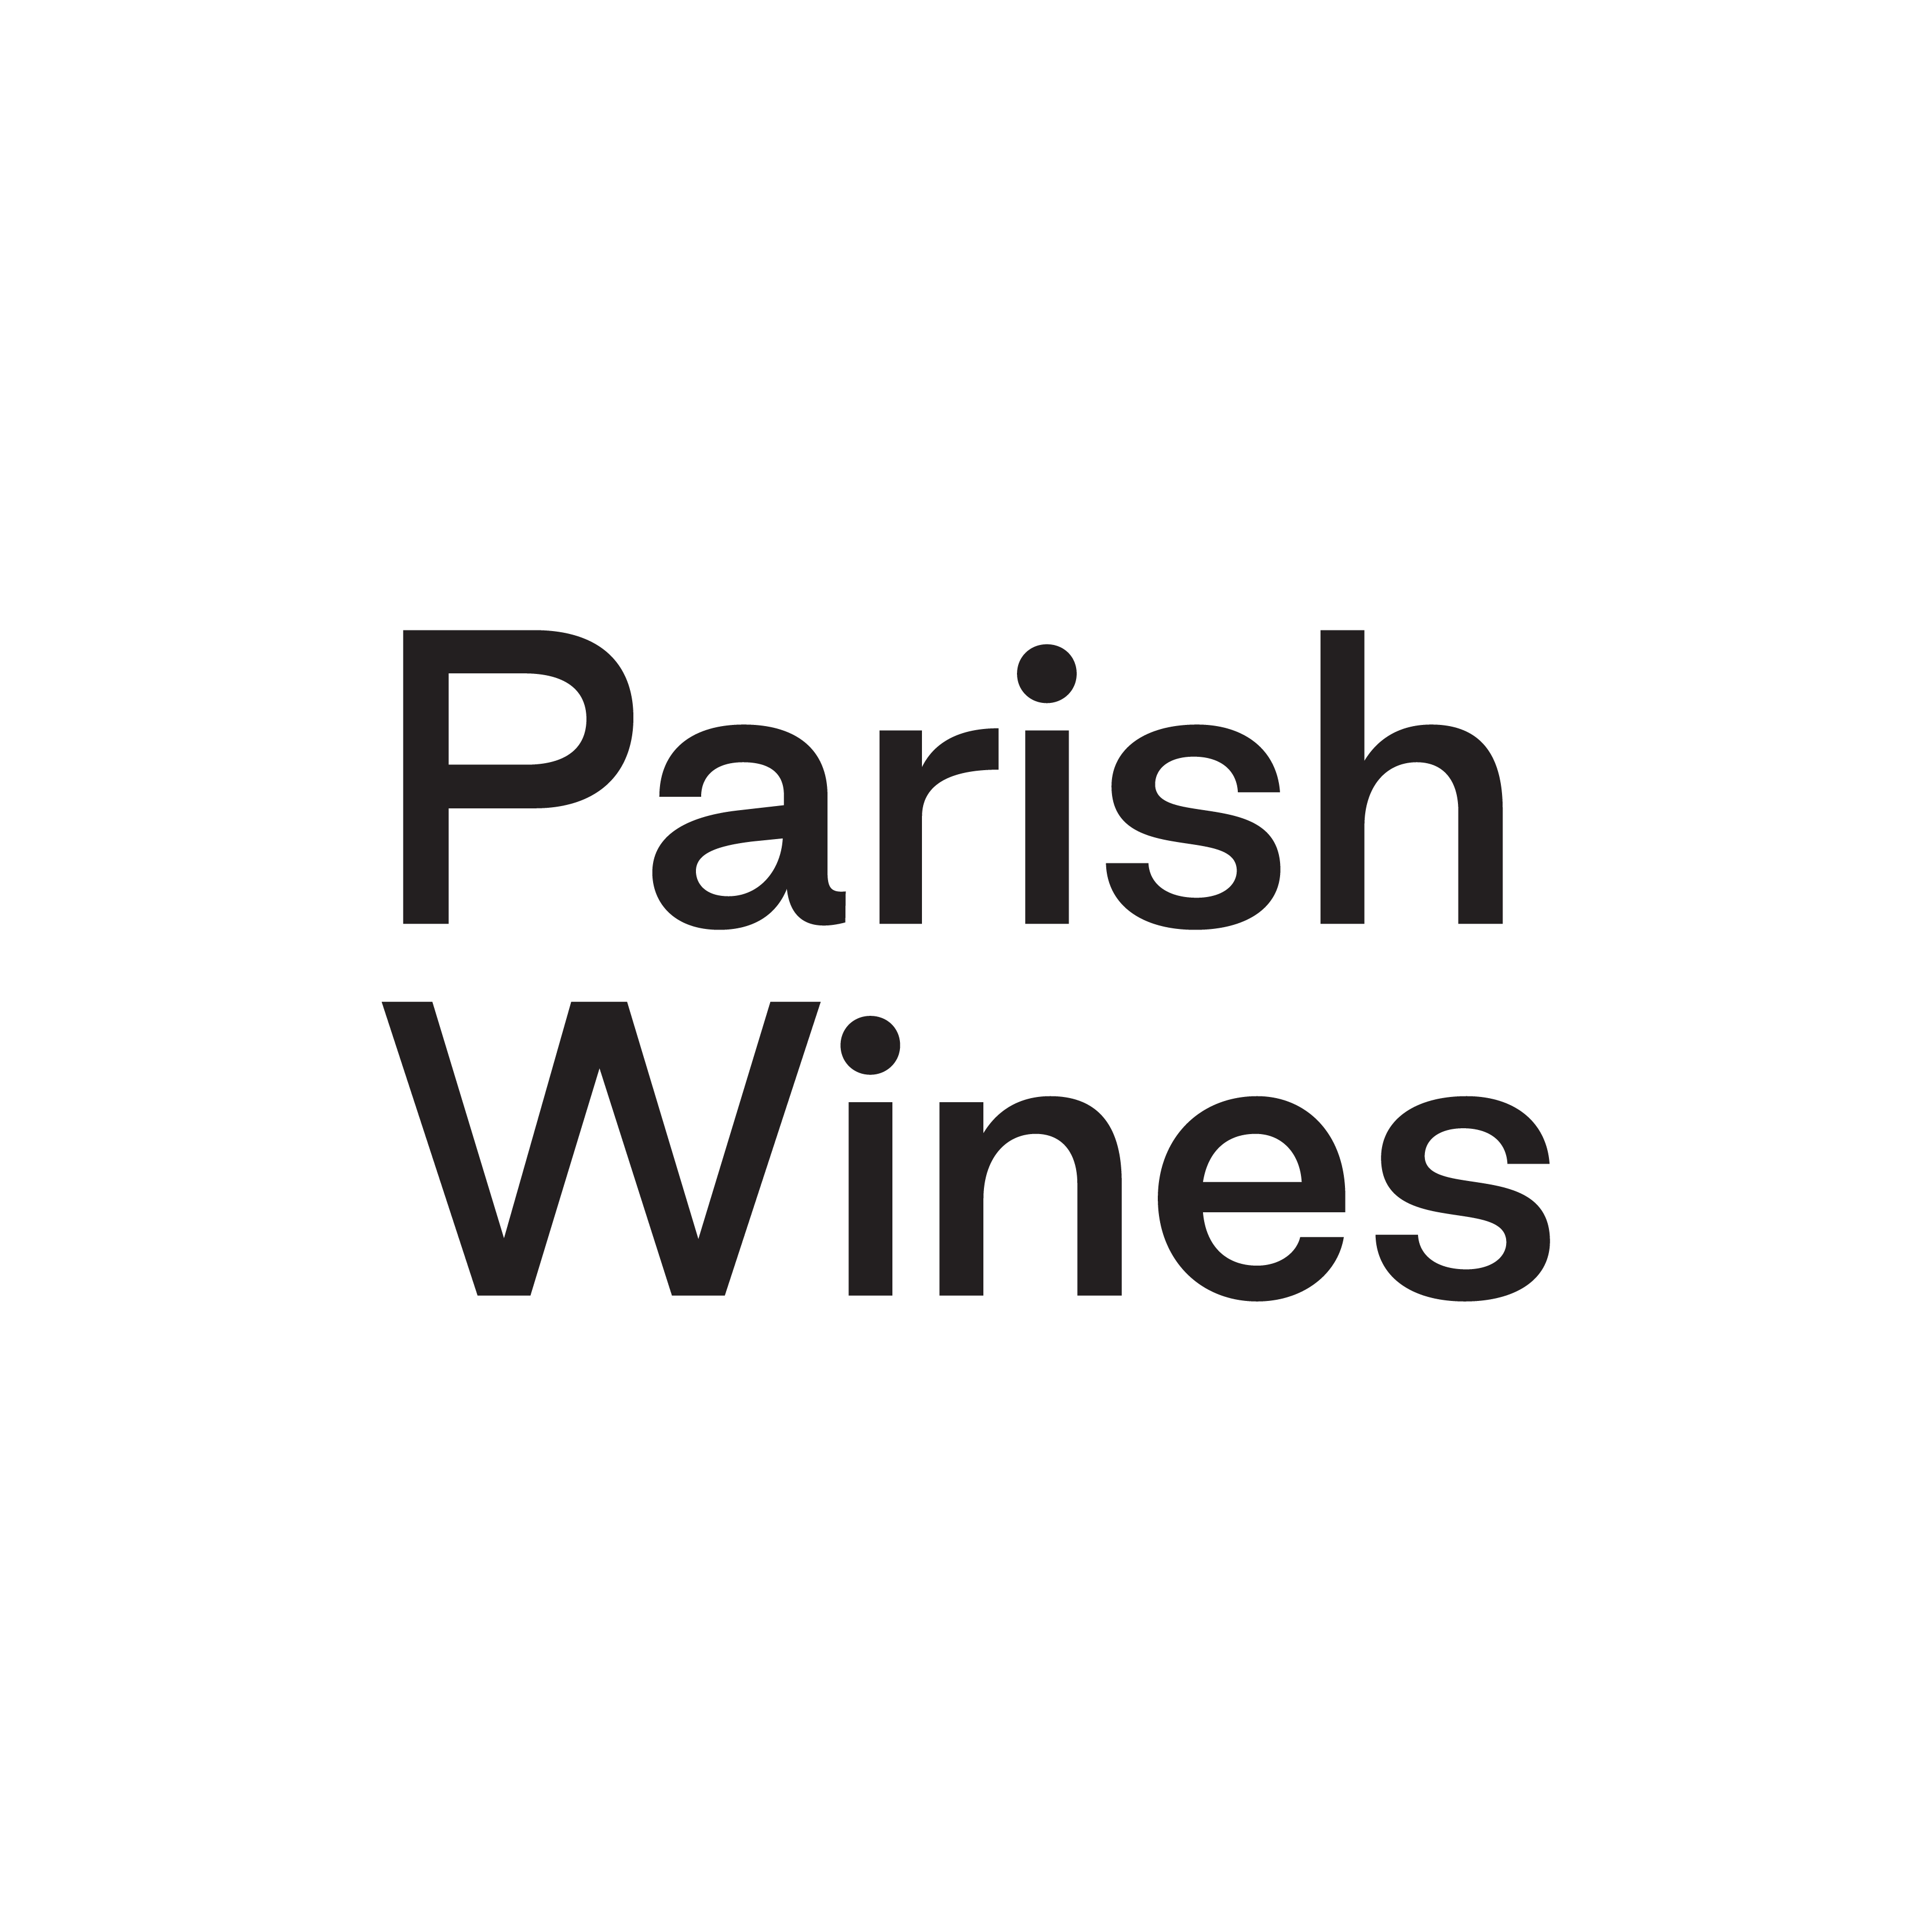 Parish Wines